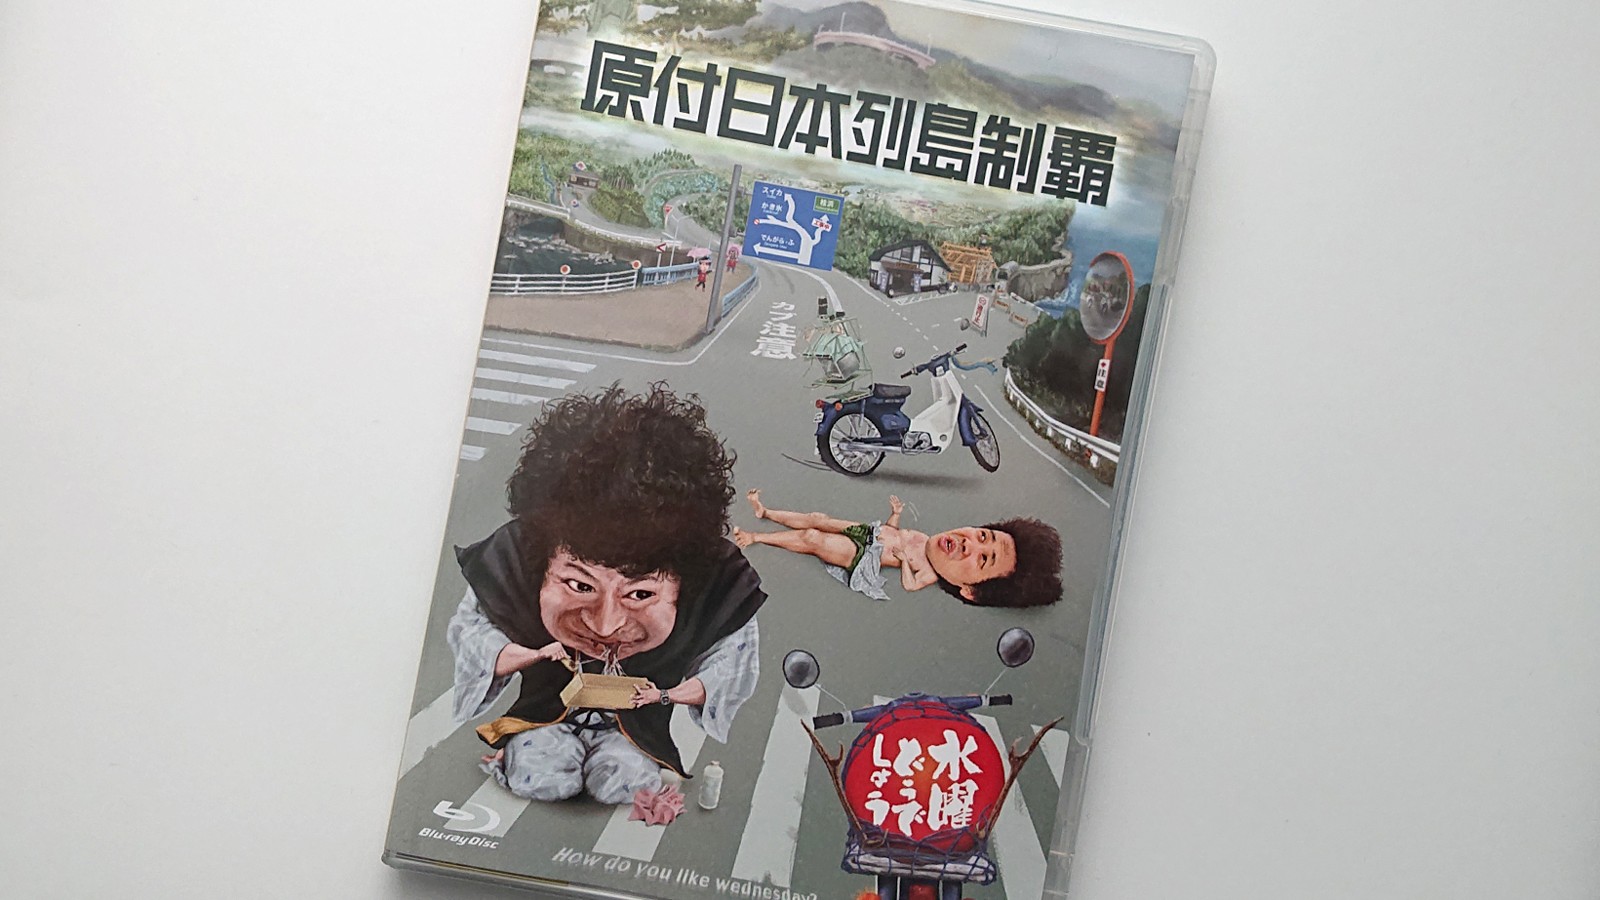 水曜どうでしょう第29弾DVD&Blu-ray「原付日本列島制覇」の名言を“文字”にしてみました！ | Buzzbird LAB(バズバード ラボ)